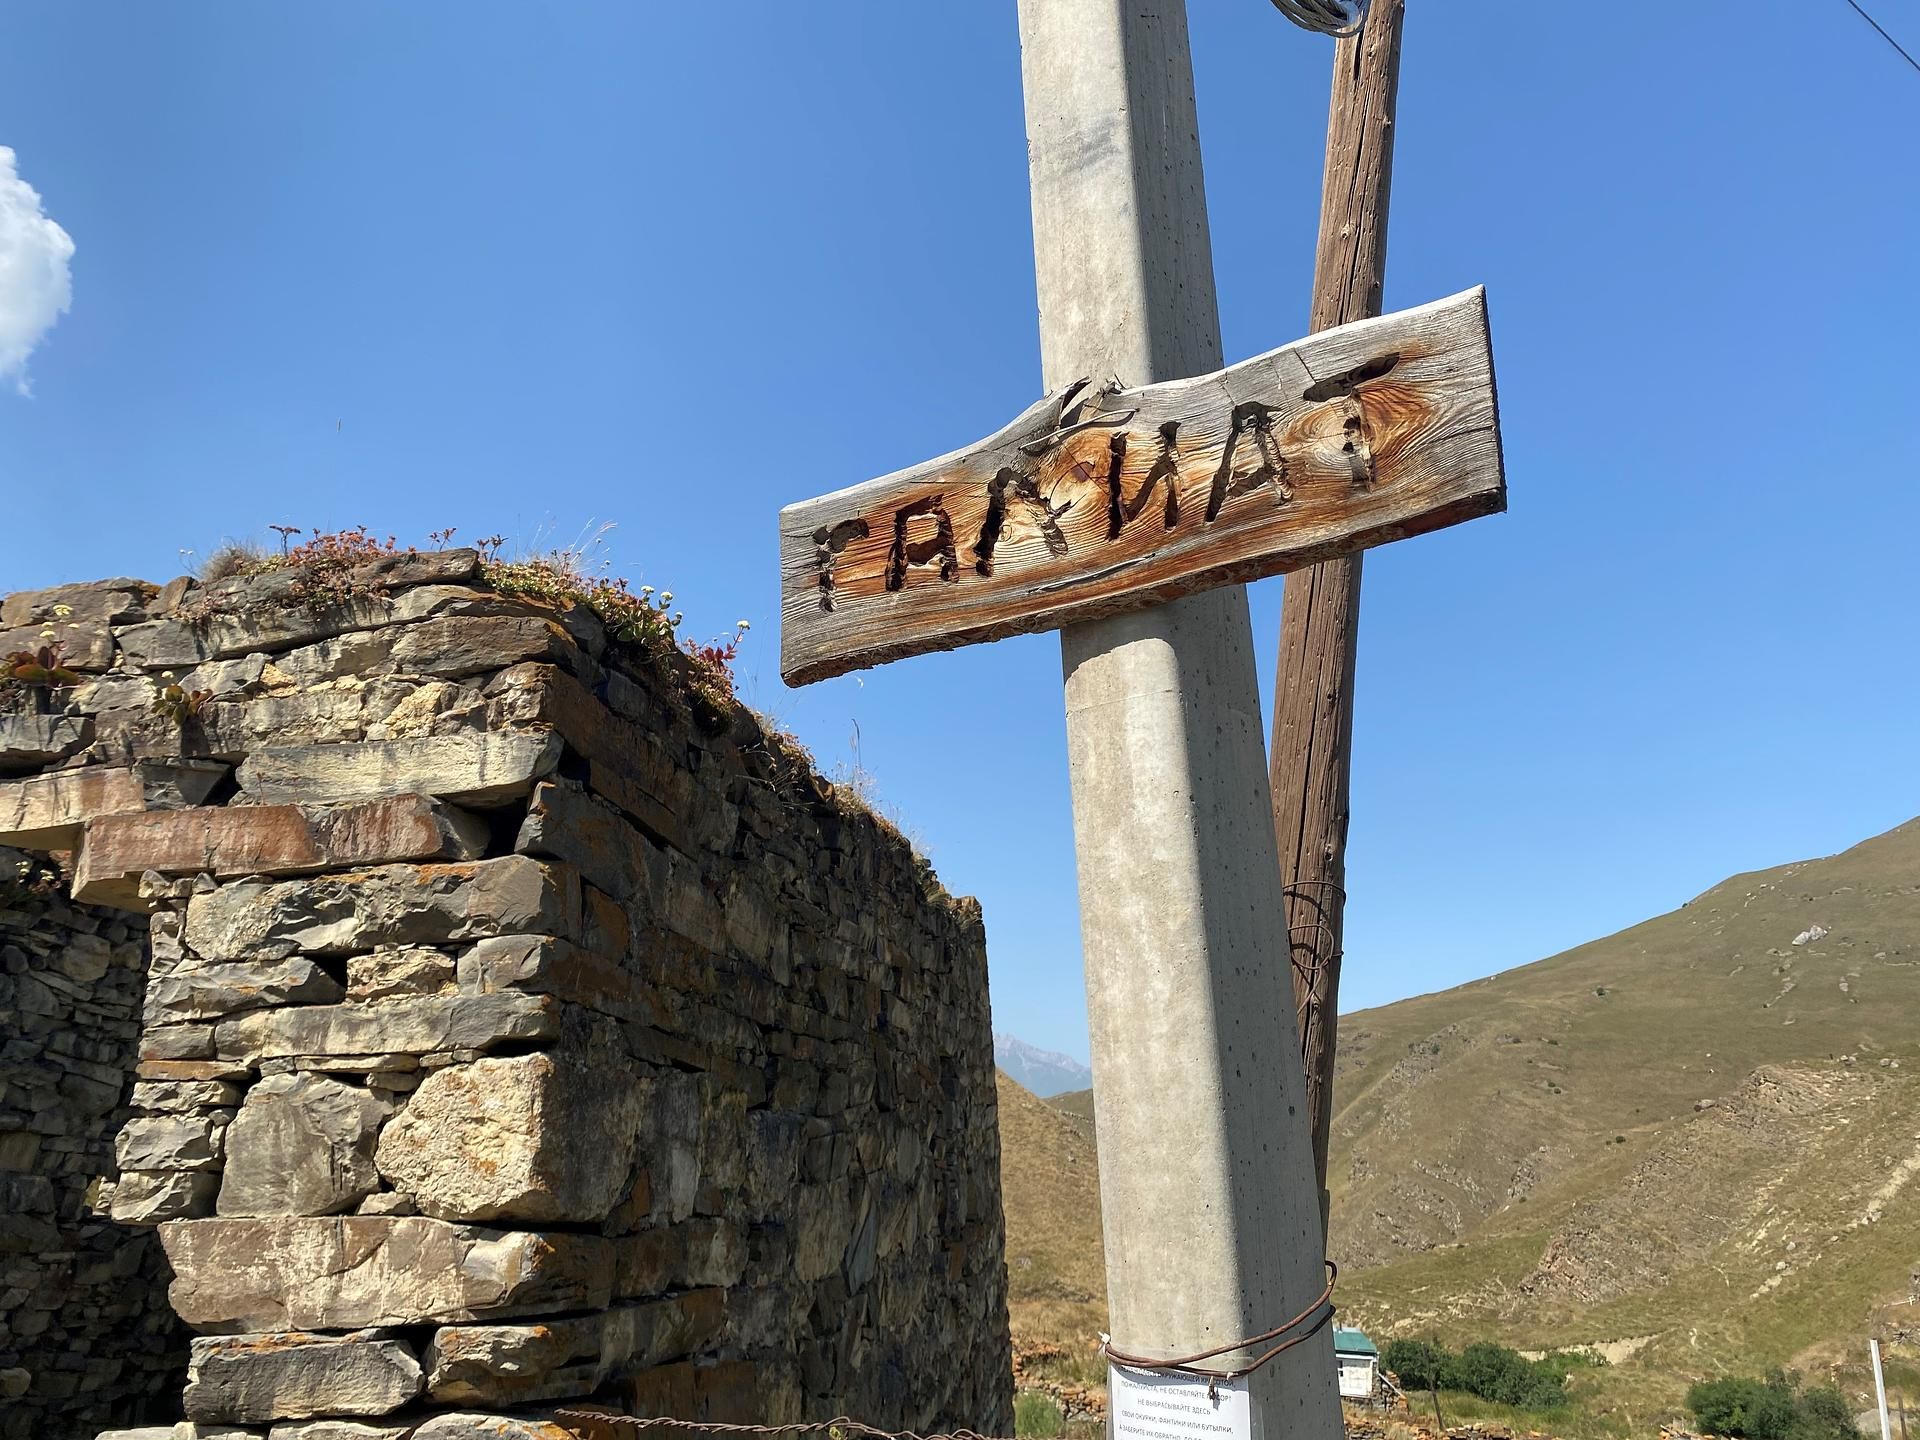 Загадочные перевалы Осетии на джипах. Эксклюзив!